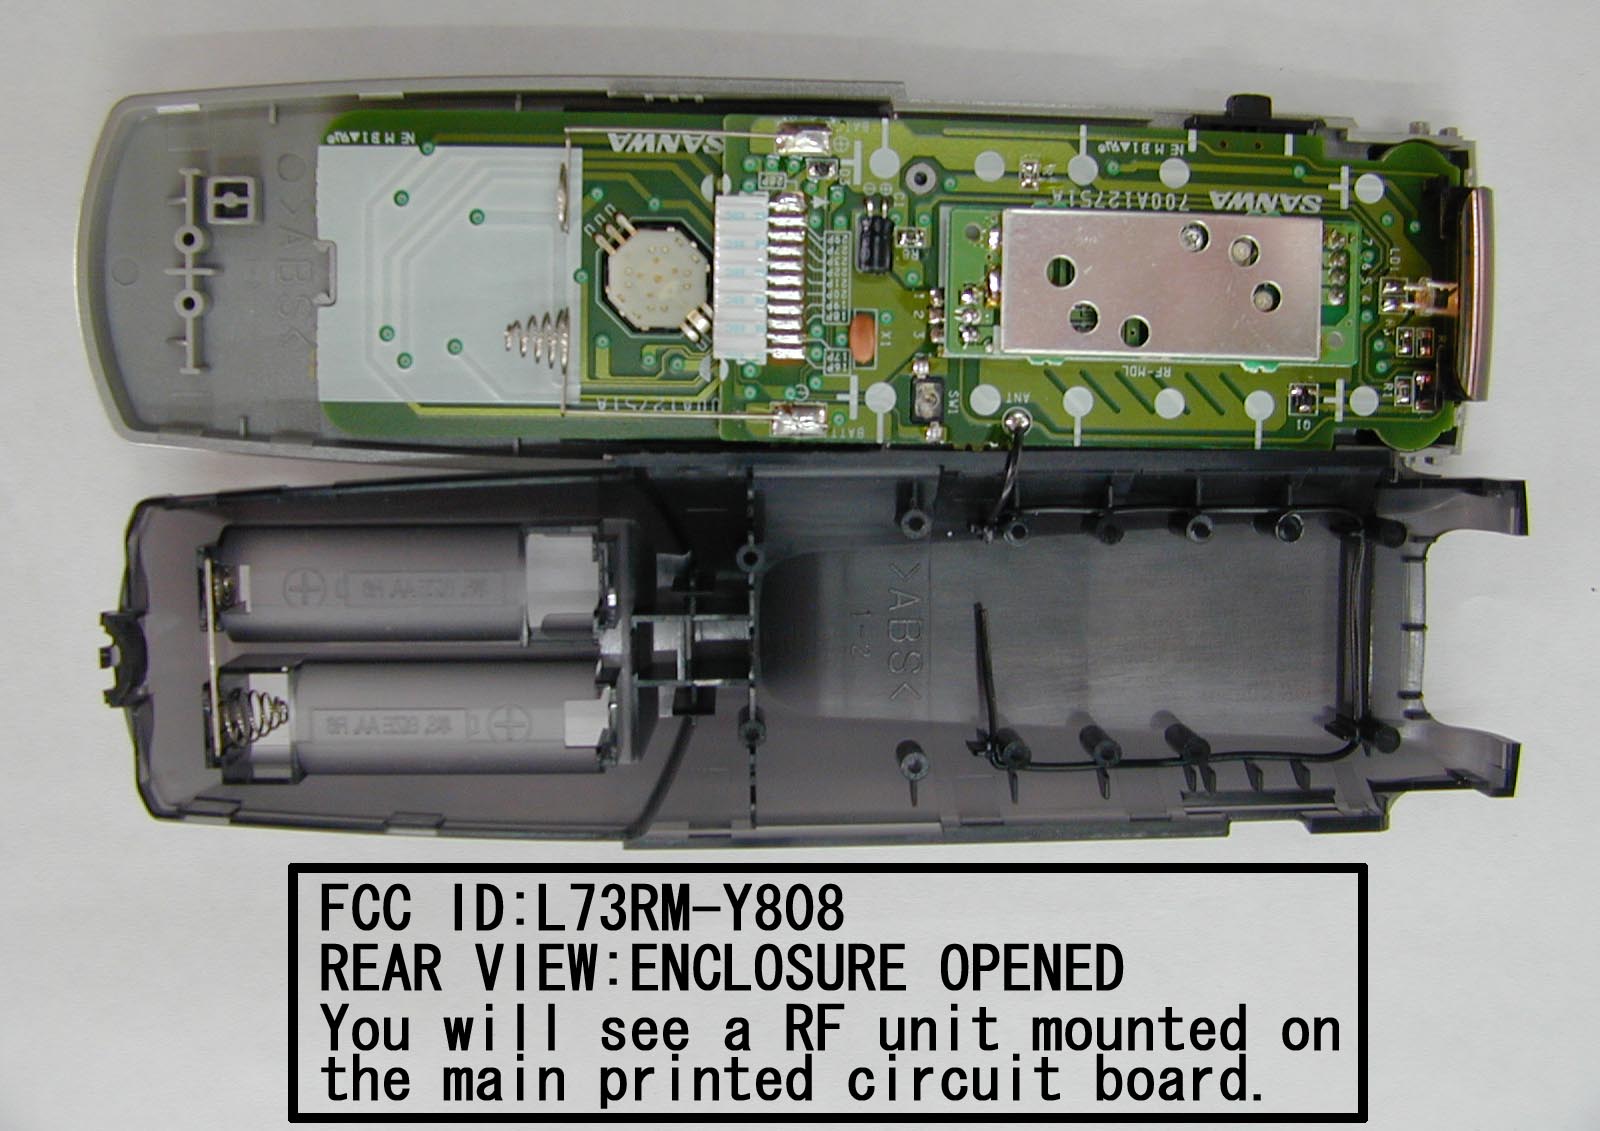 FCC ID L73RM-Y808